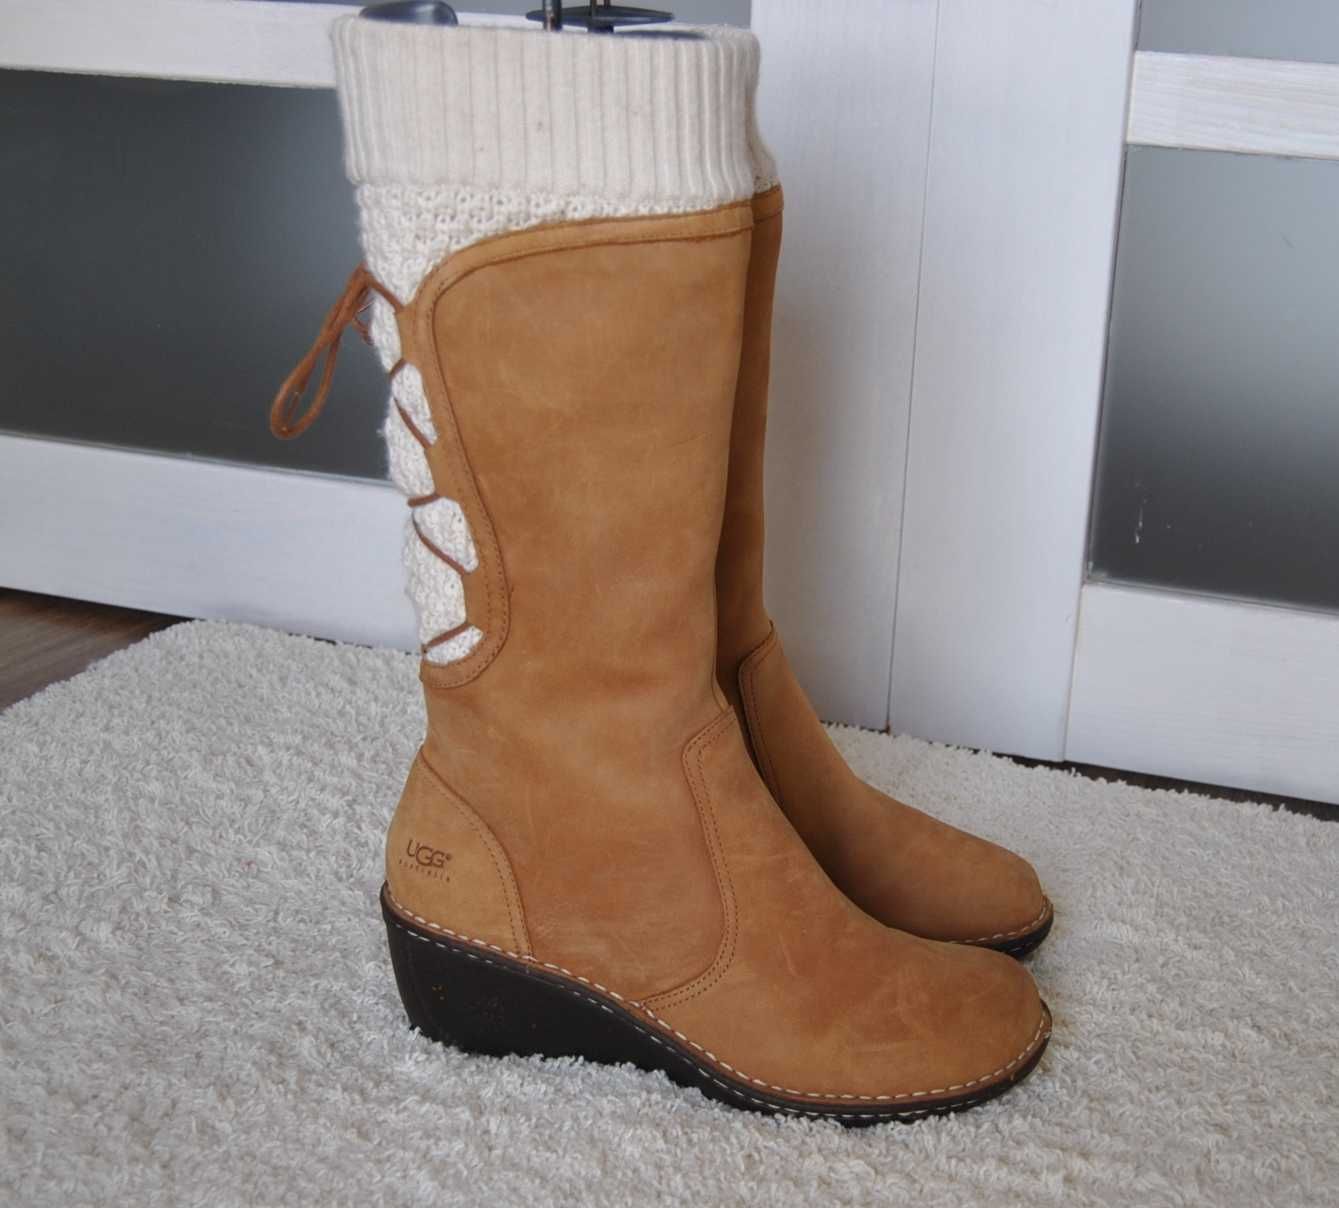 Ugg шкіряні зимові чоботи 27,5 см. / зимние кожаные сапоги